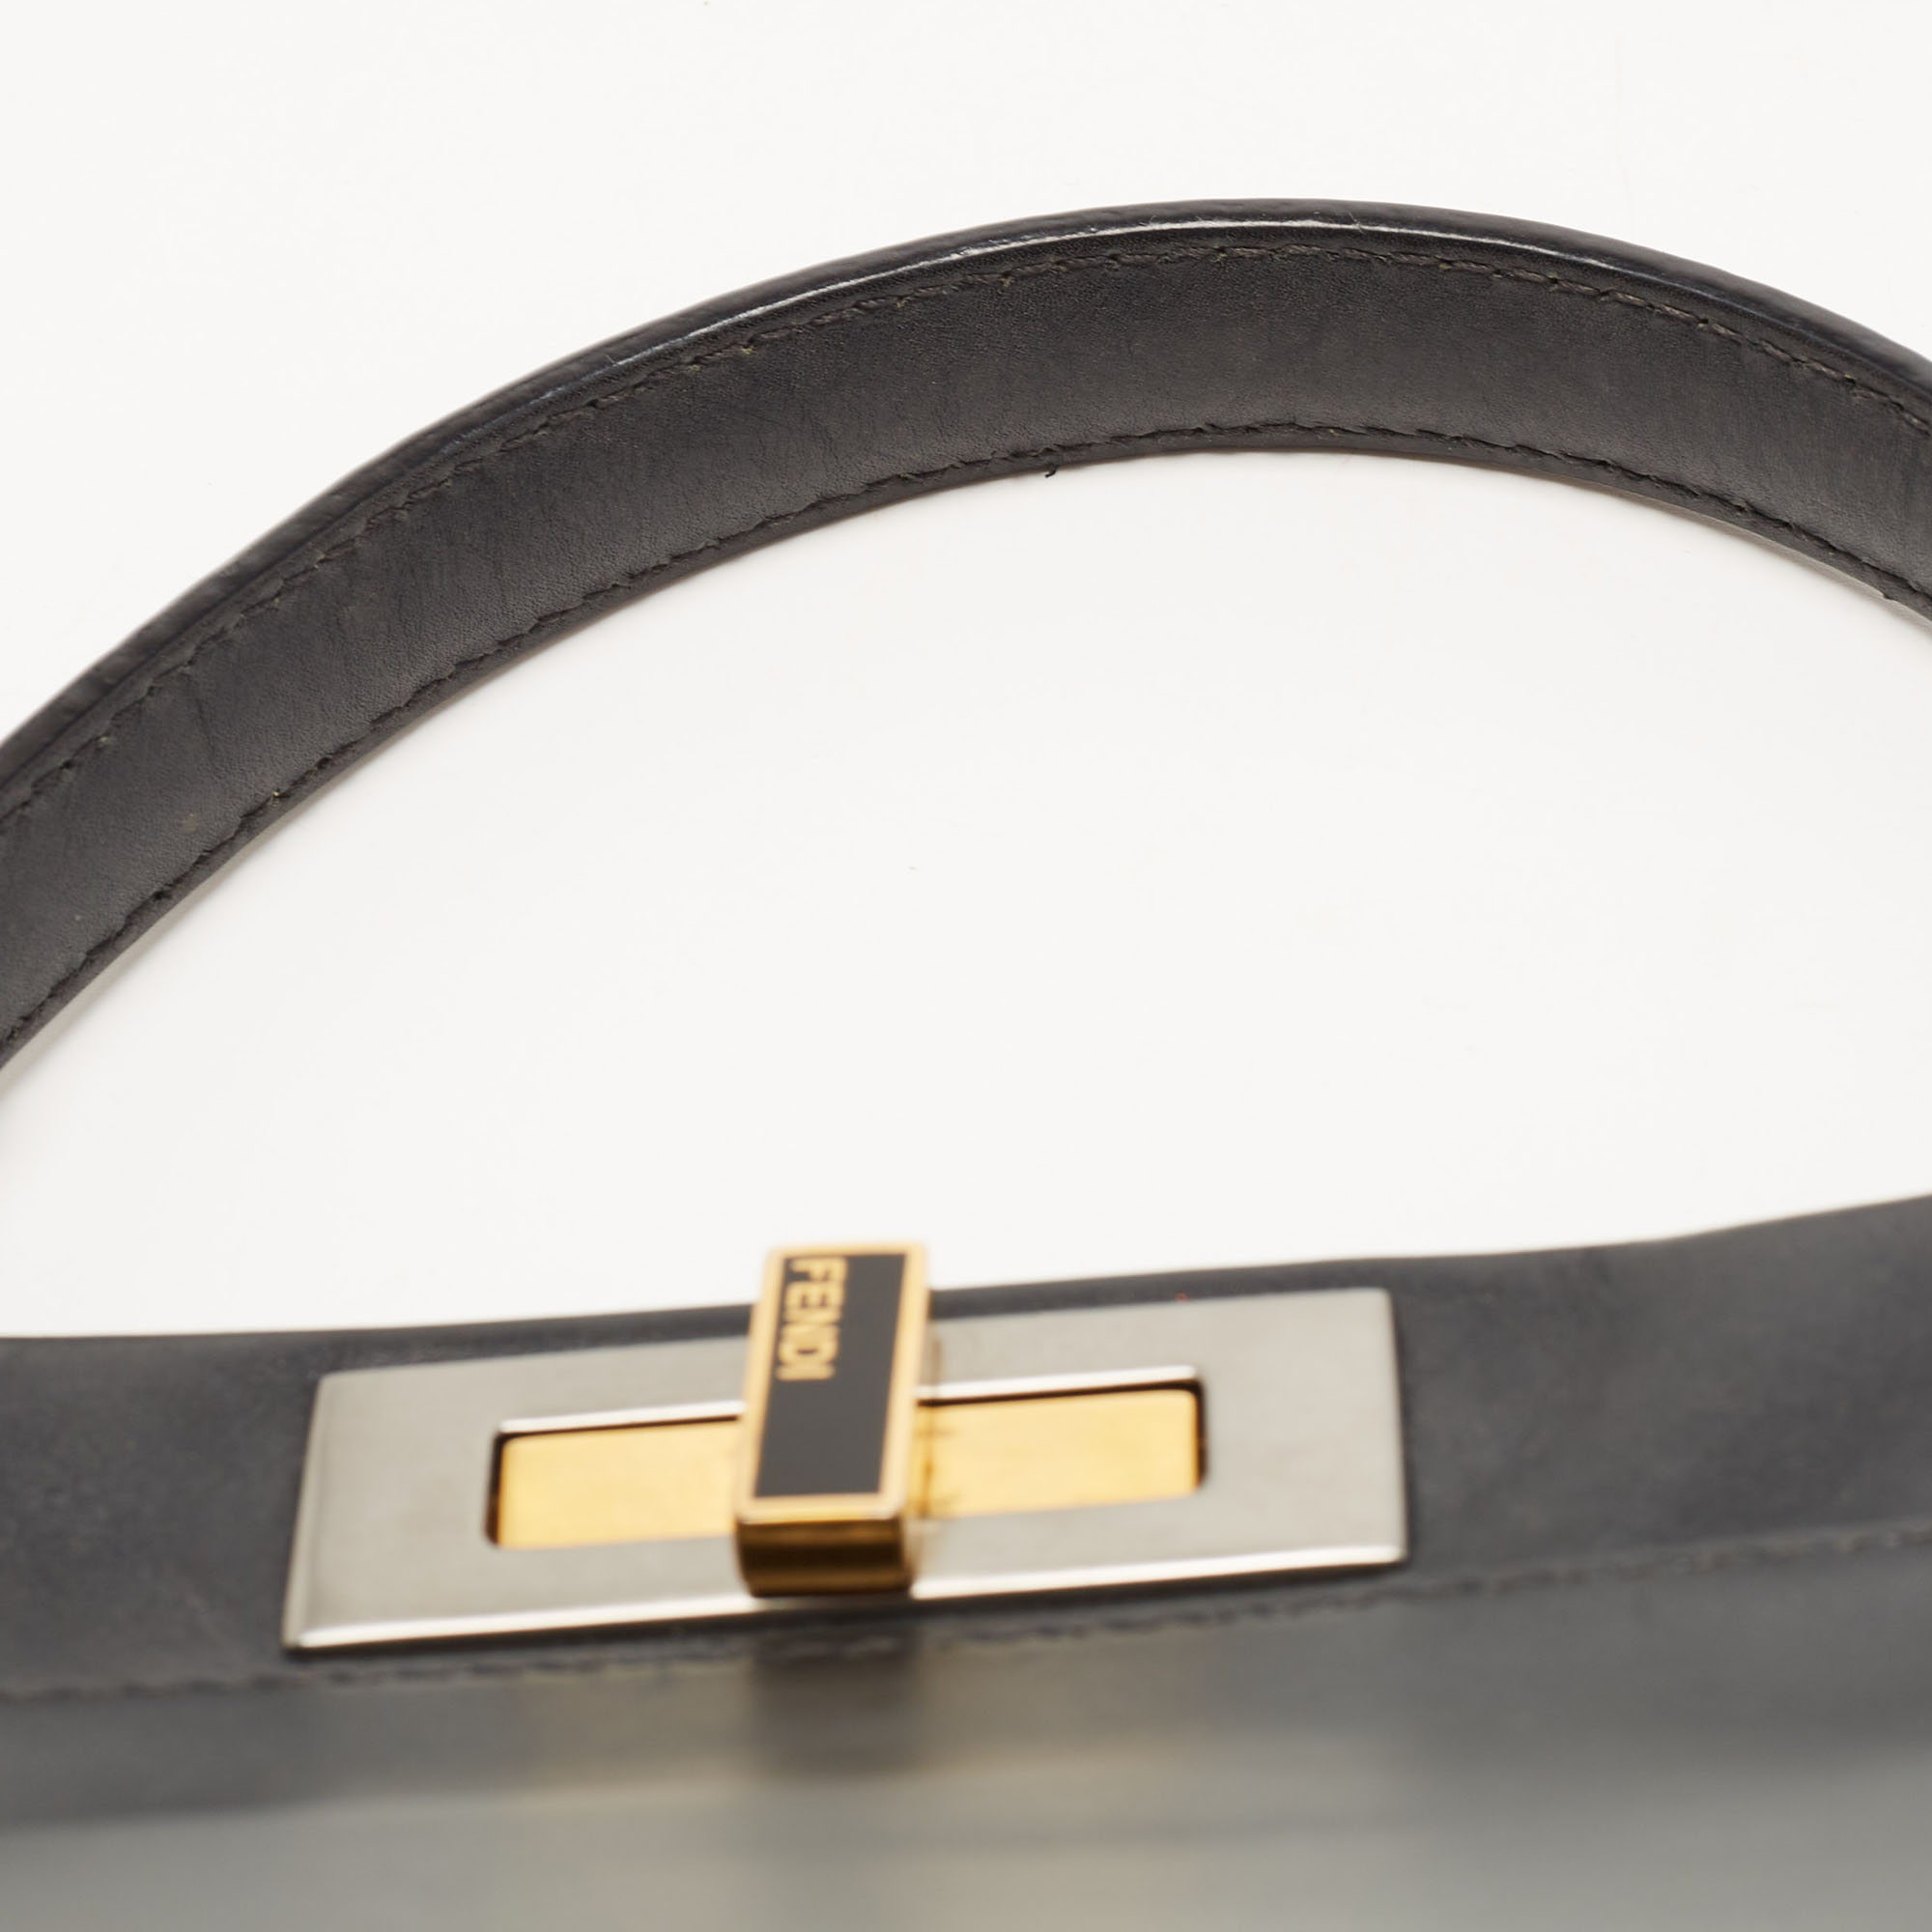 Fendi Black Leather Medium Peekaboo Top Handle Bag